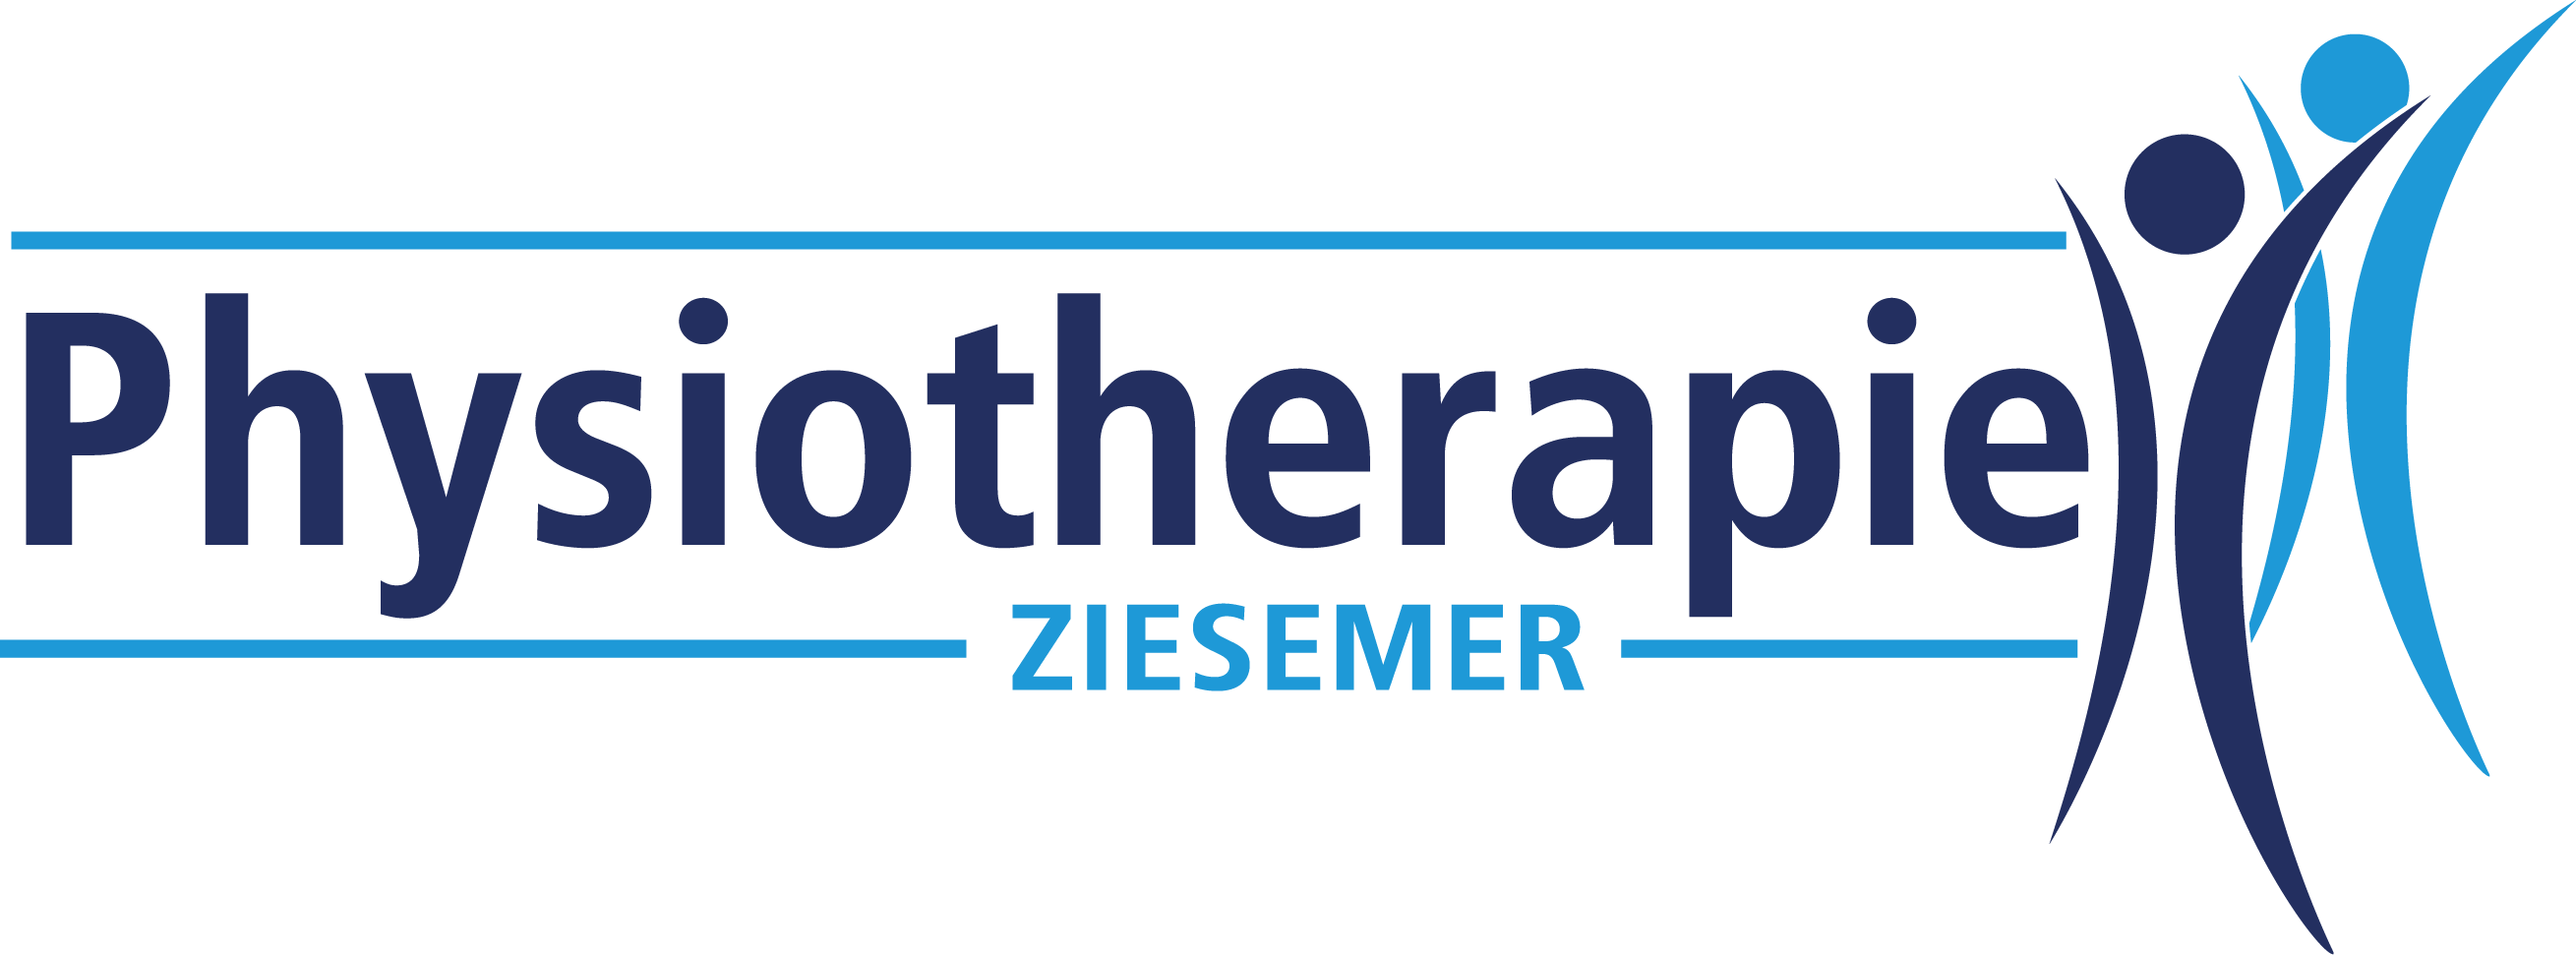 Physiotherapie Ziesemer Logo